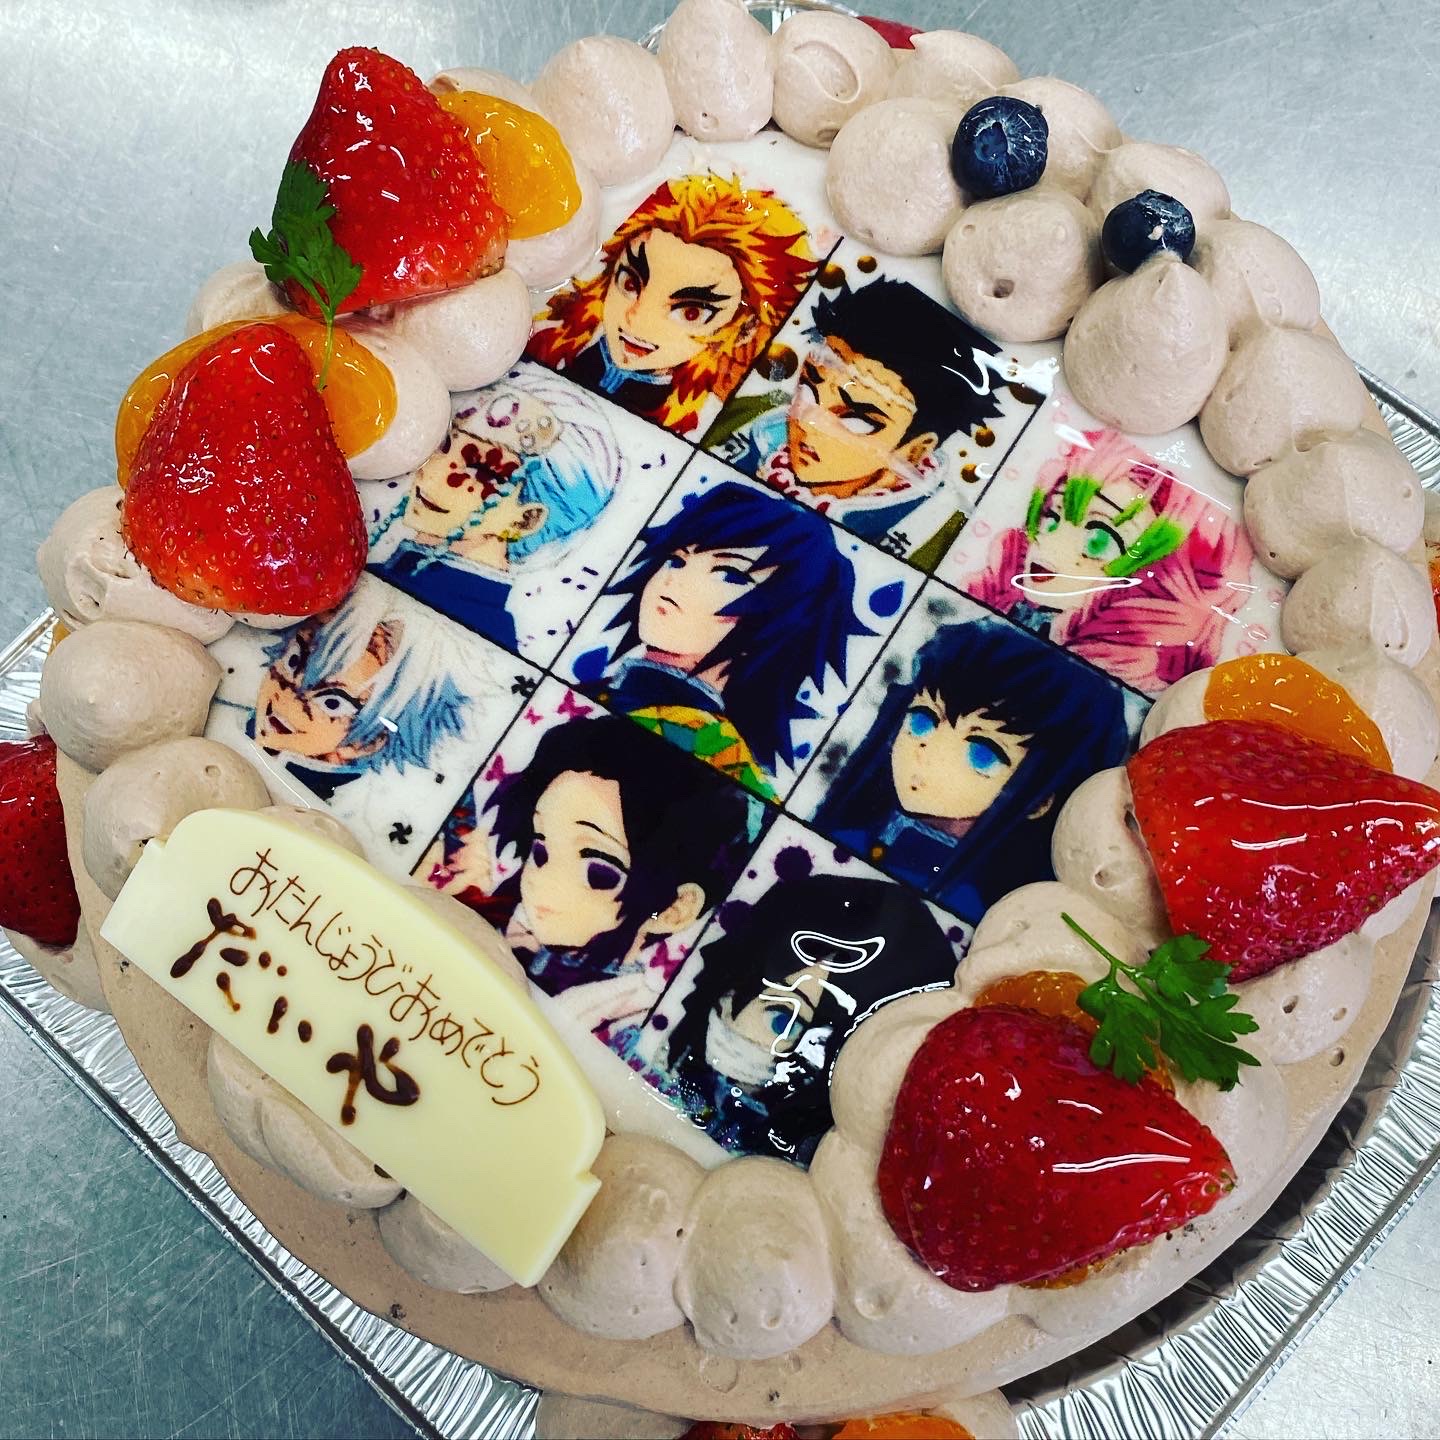 熱海 湯河原 カワイイ誕生日ケーキのオーダーキャラクターフォト 写真 デコレーションケーキ Atami 熱海 住吉屋の店長ブログ